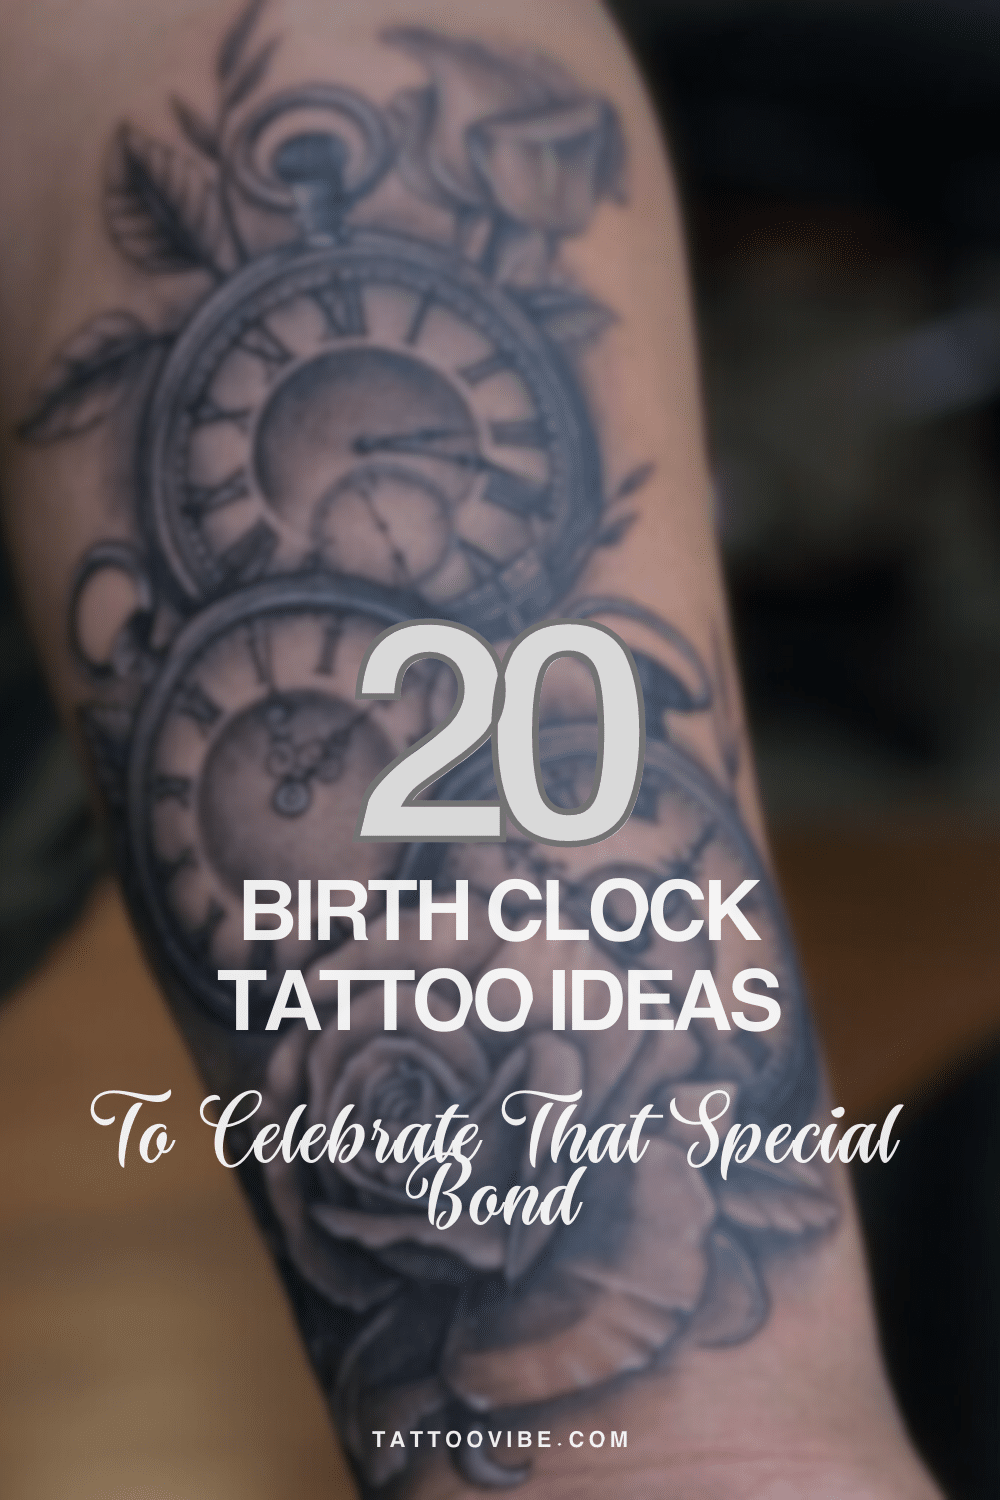 20 idee di tatuaggio sull'orologio di nascita per celebrare un legame speciale